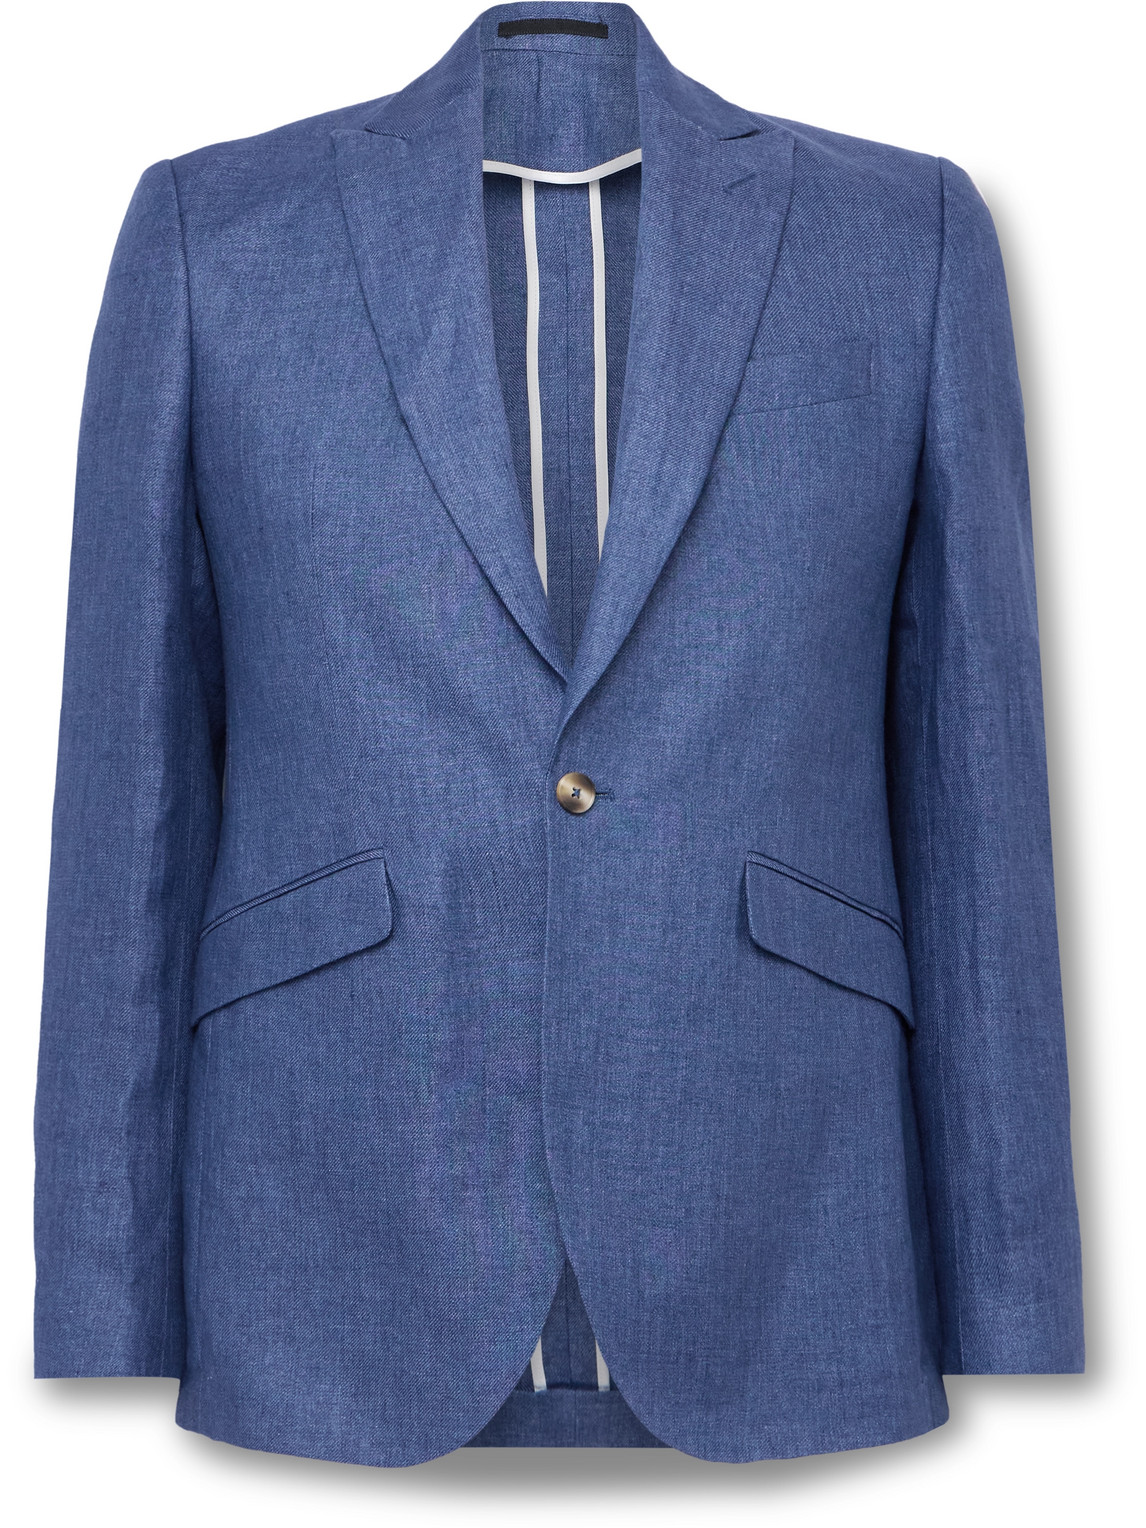 Ebury Twill Suit Jacket